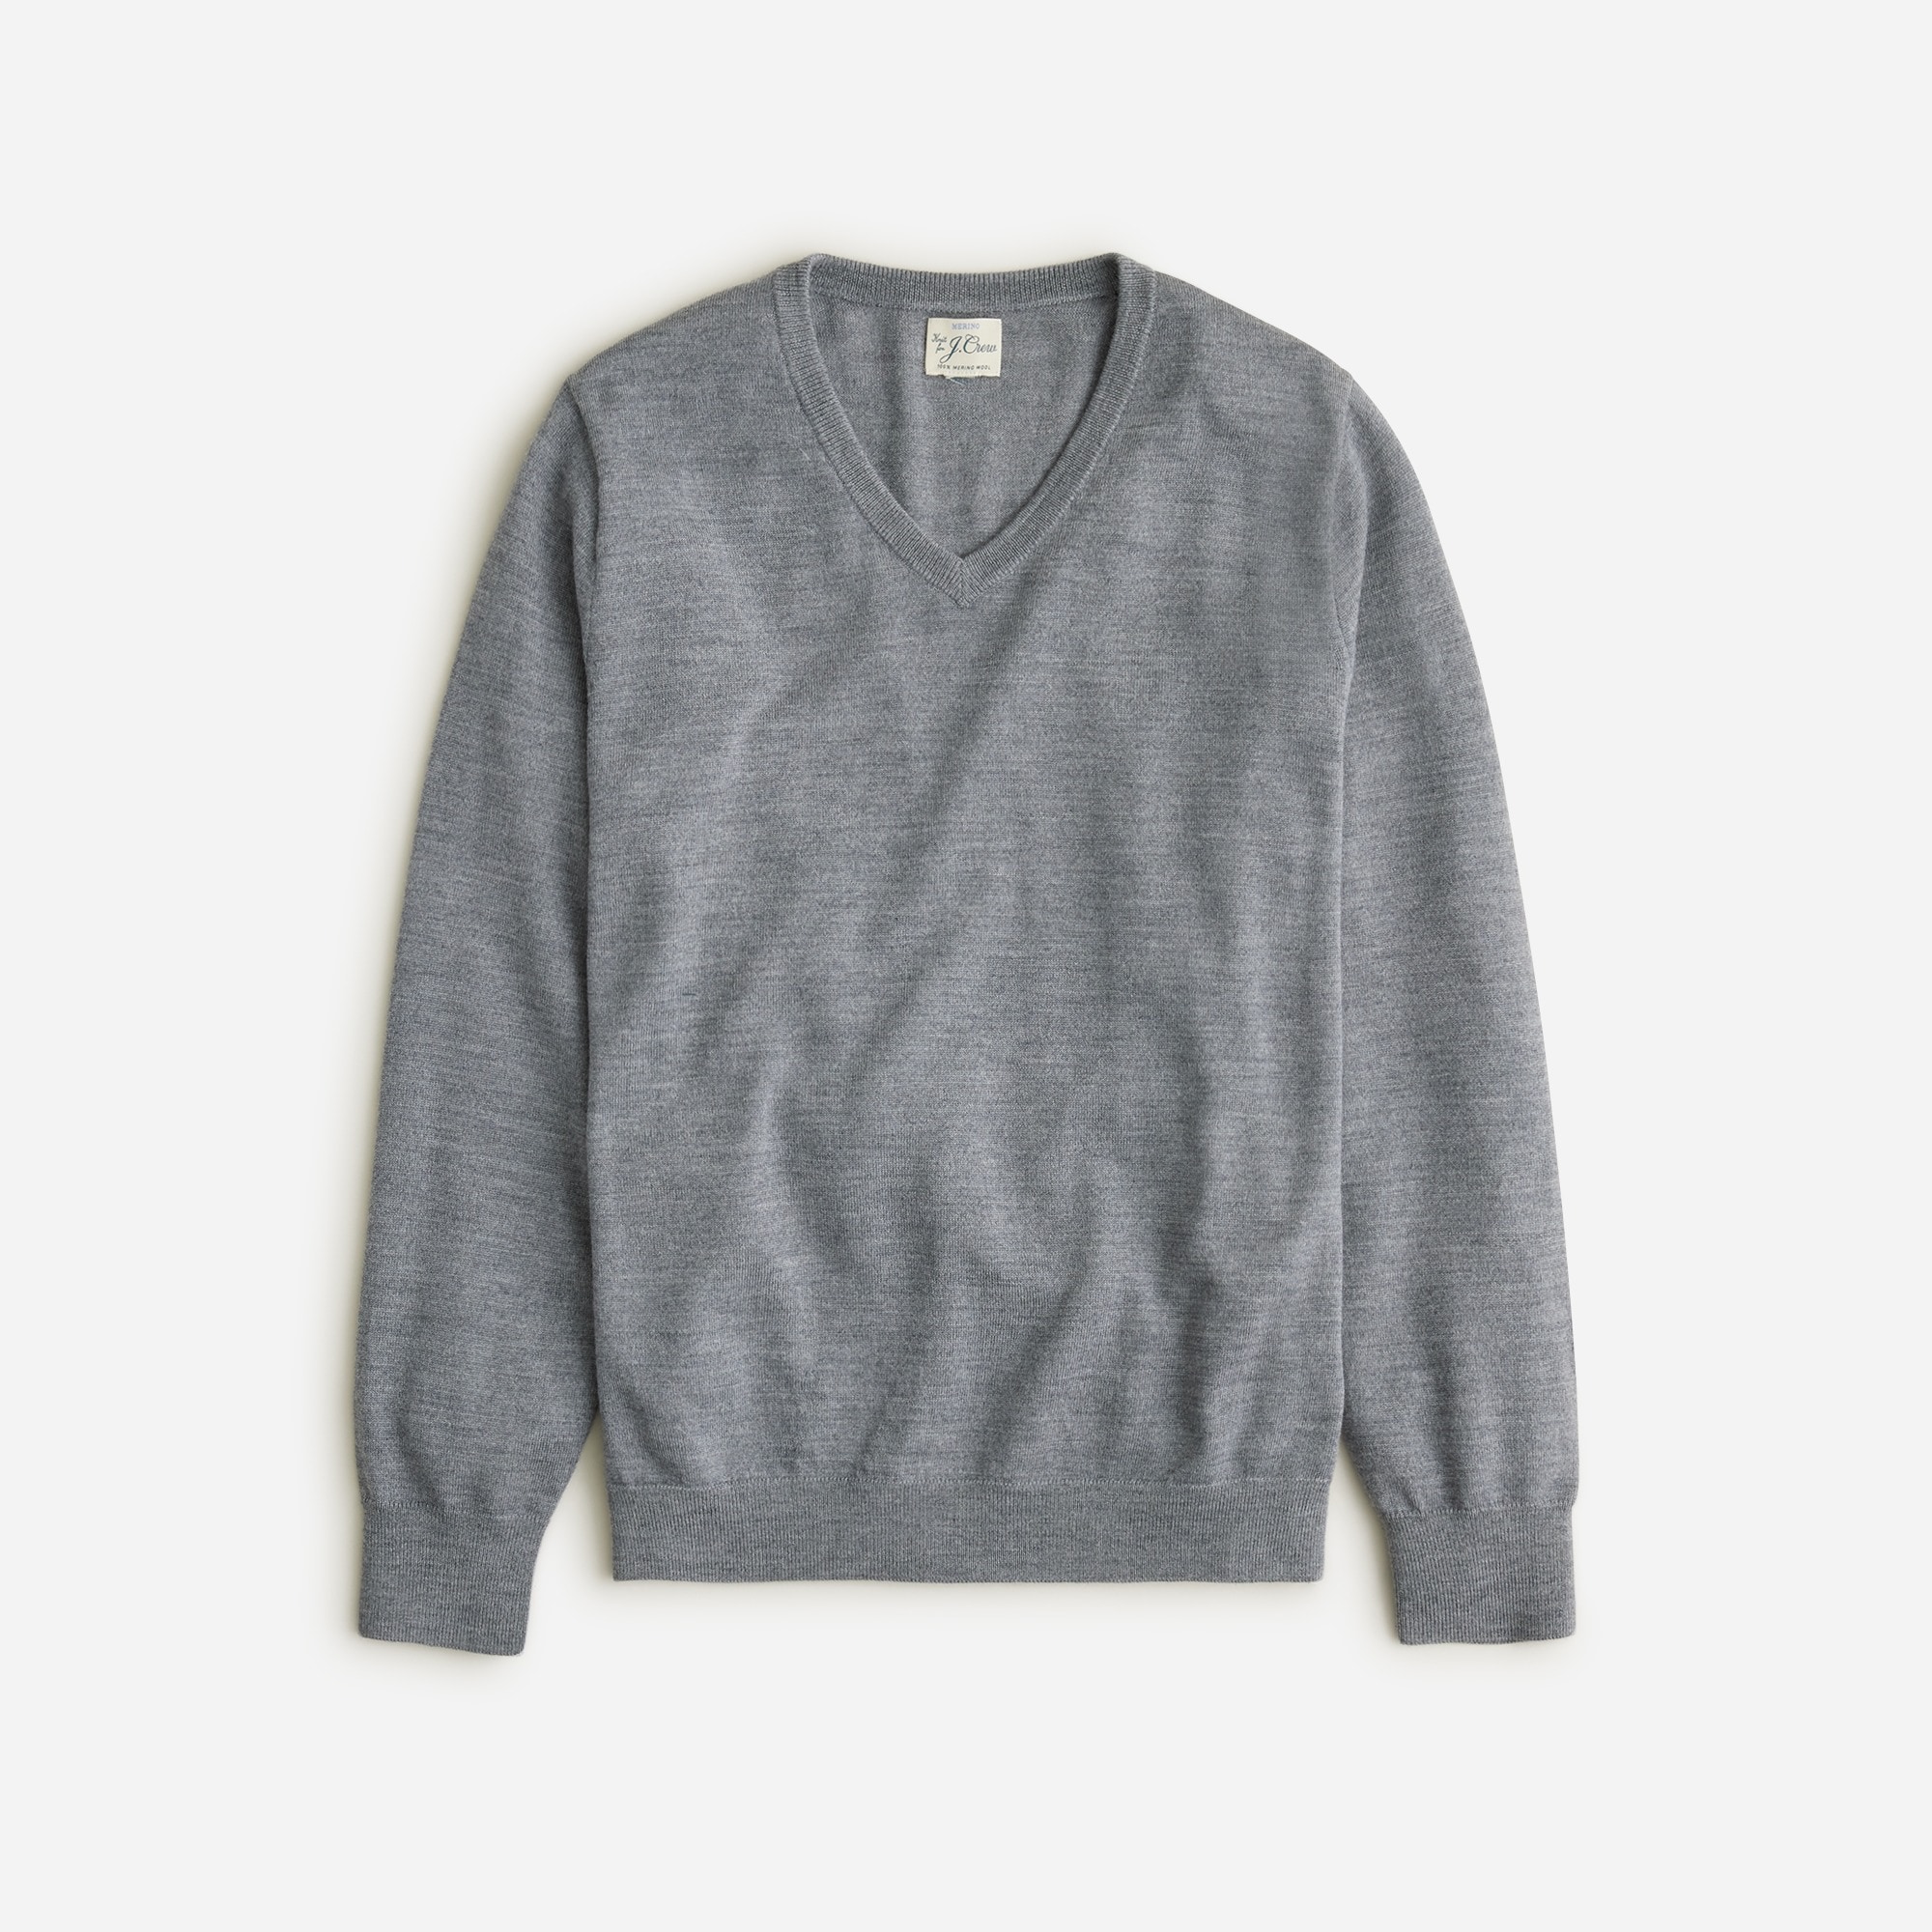  Merino wool V-neck sweater